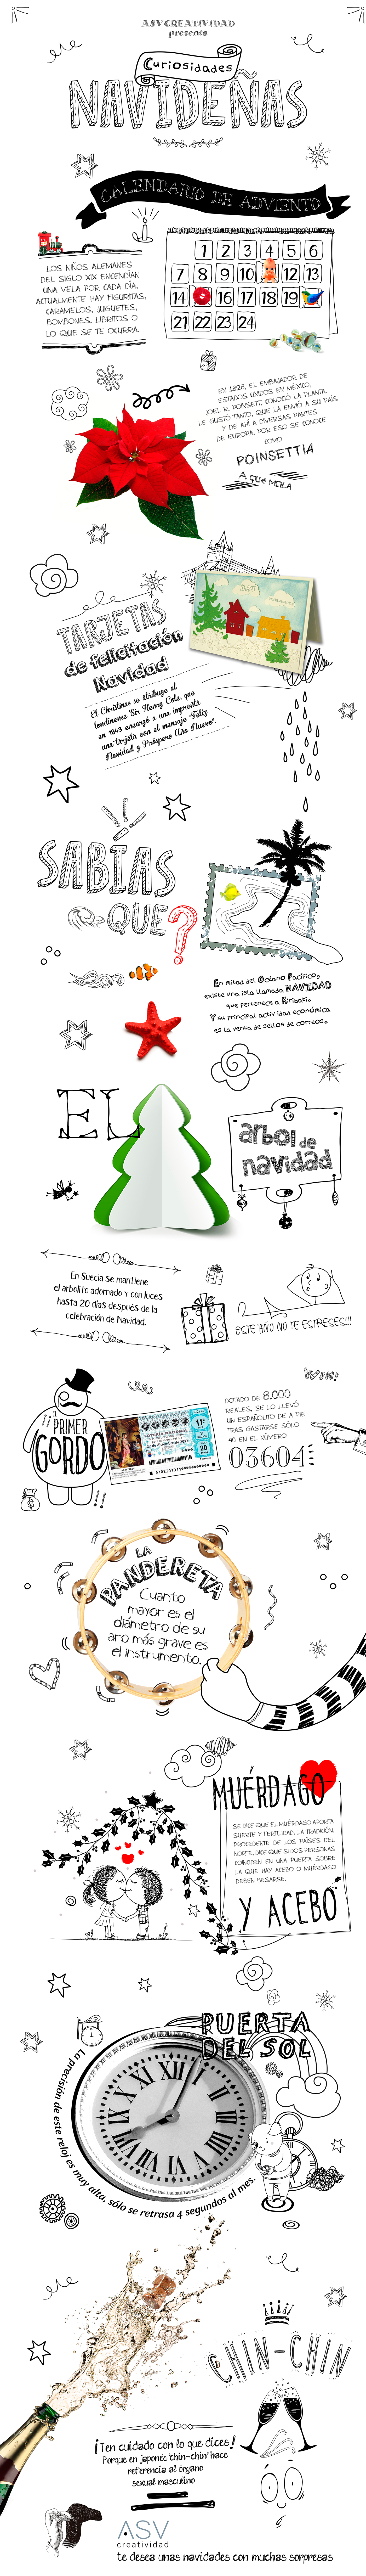 xmas navidad felicitación Christmas banner design